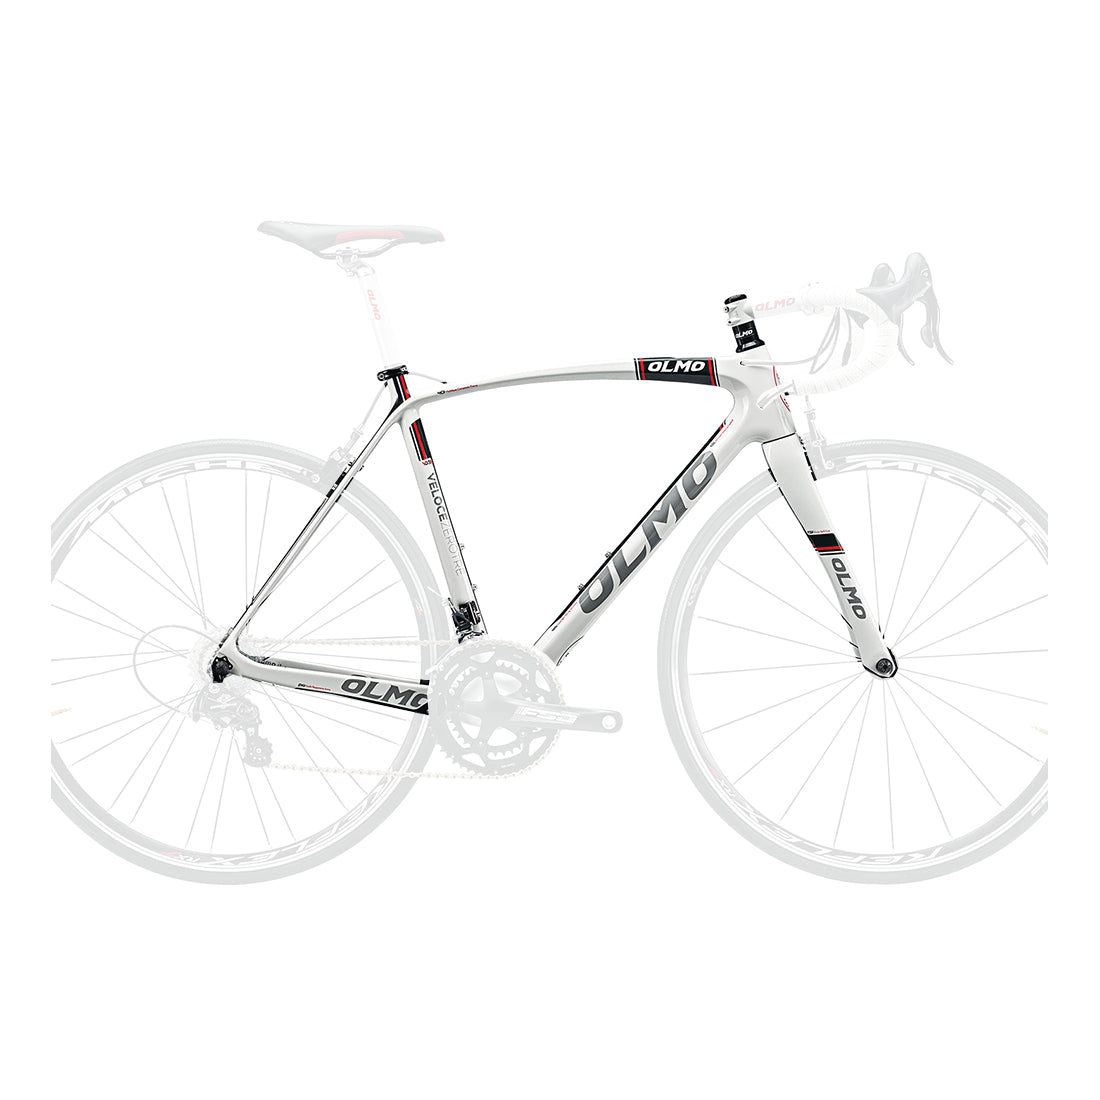 Olmo Zero Tre Carbon Fiber Bicycle Frame - Gloss White